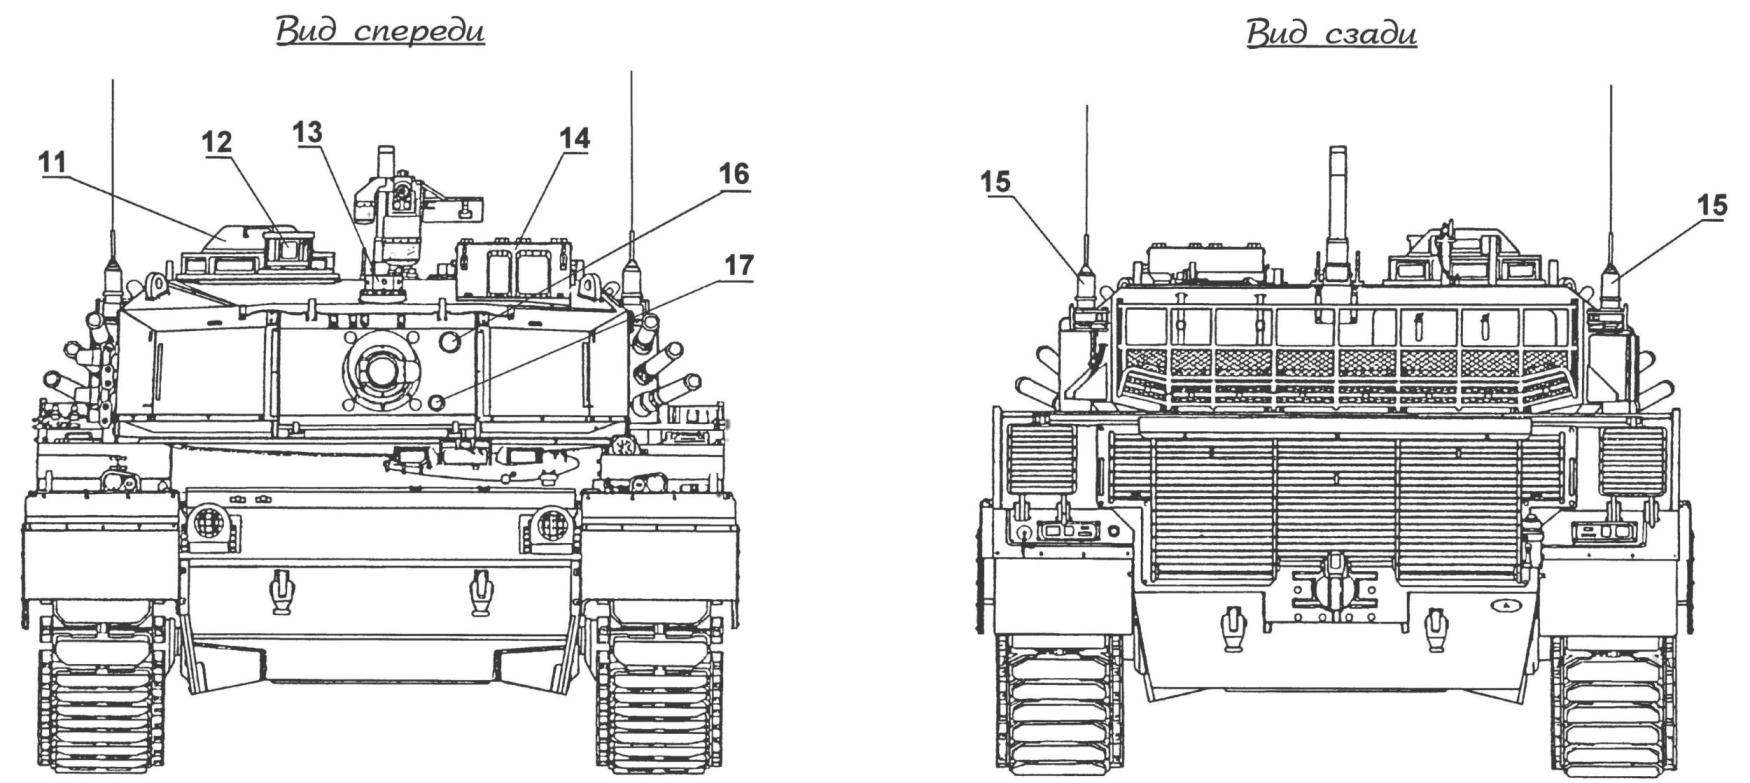 Основной боевой танк «90»